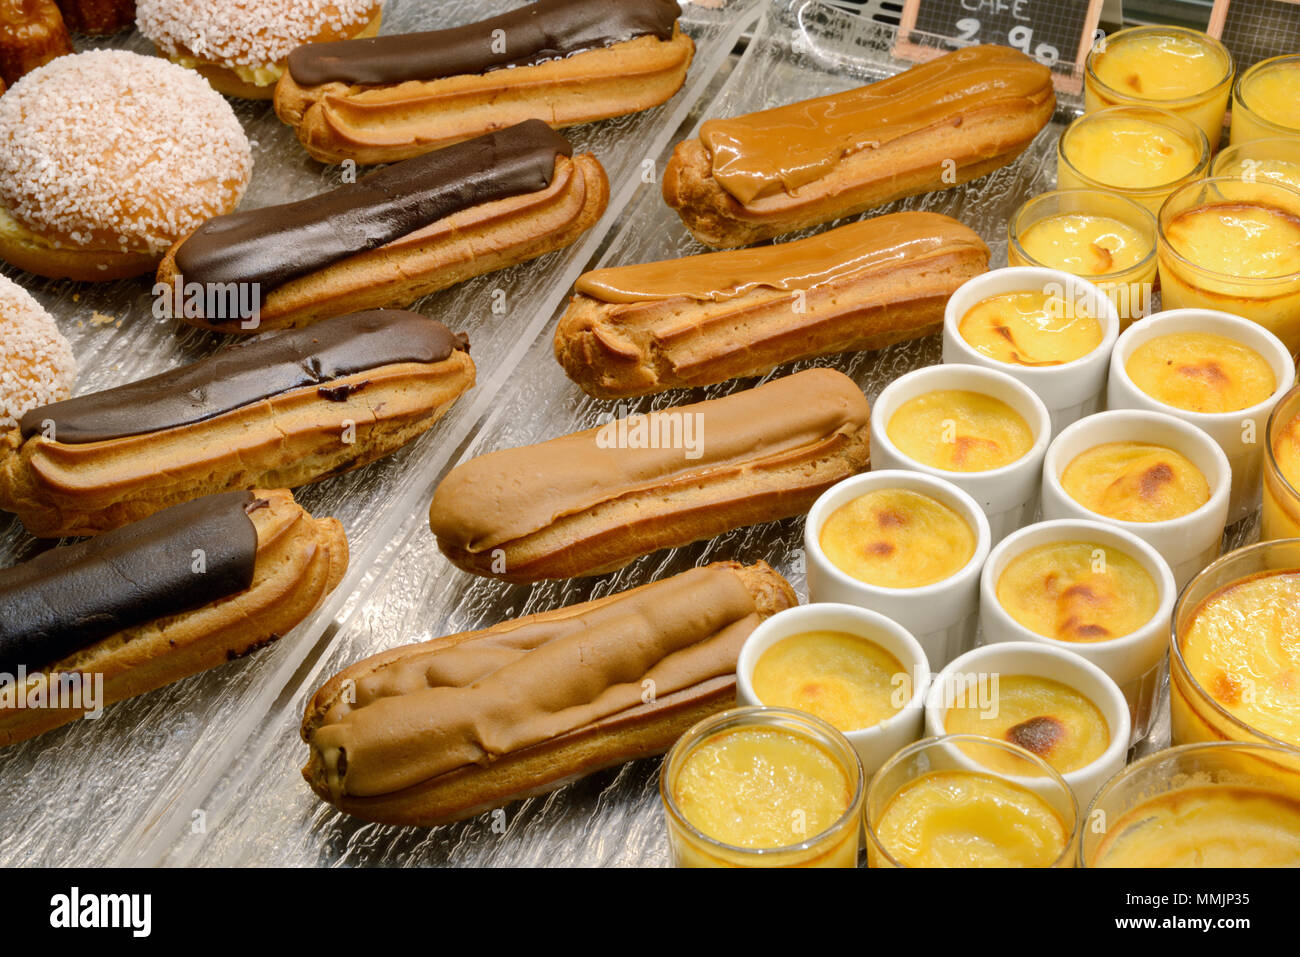 Visualizzazione di Eclairs al cioccolato, caffè Eclairs e creme caramelle & dolci o torte in una pasticceria francese in Francia Foto Stock